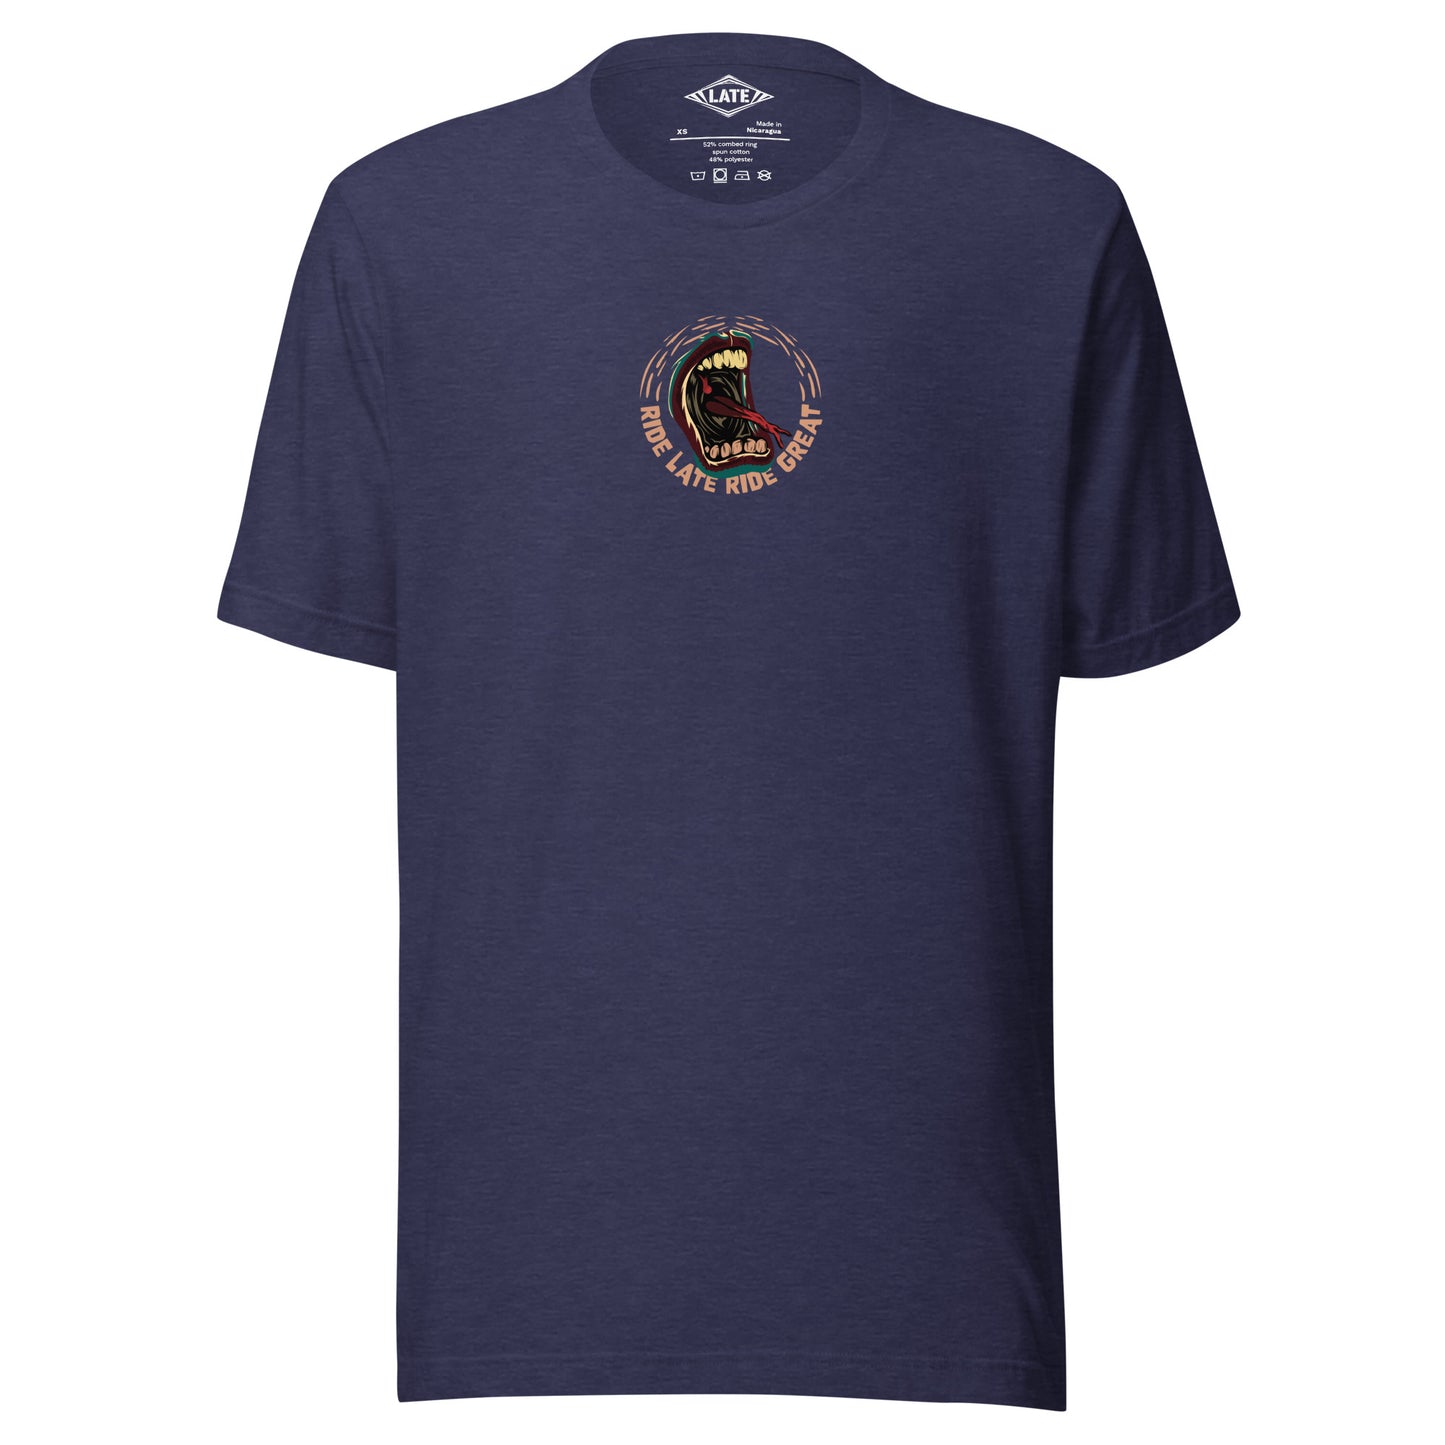 T-Shirt Ride Late Live Great skate style volcom avec un design de bouche qui tire la langue couleur du t-shirt unisex heather navy